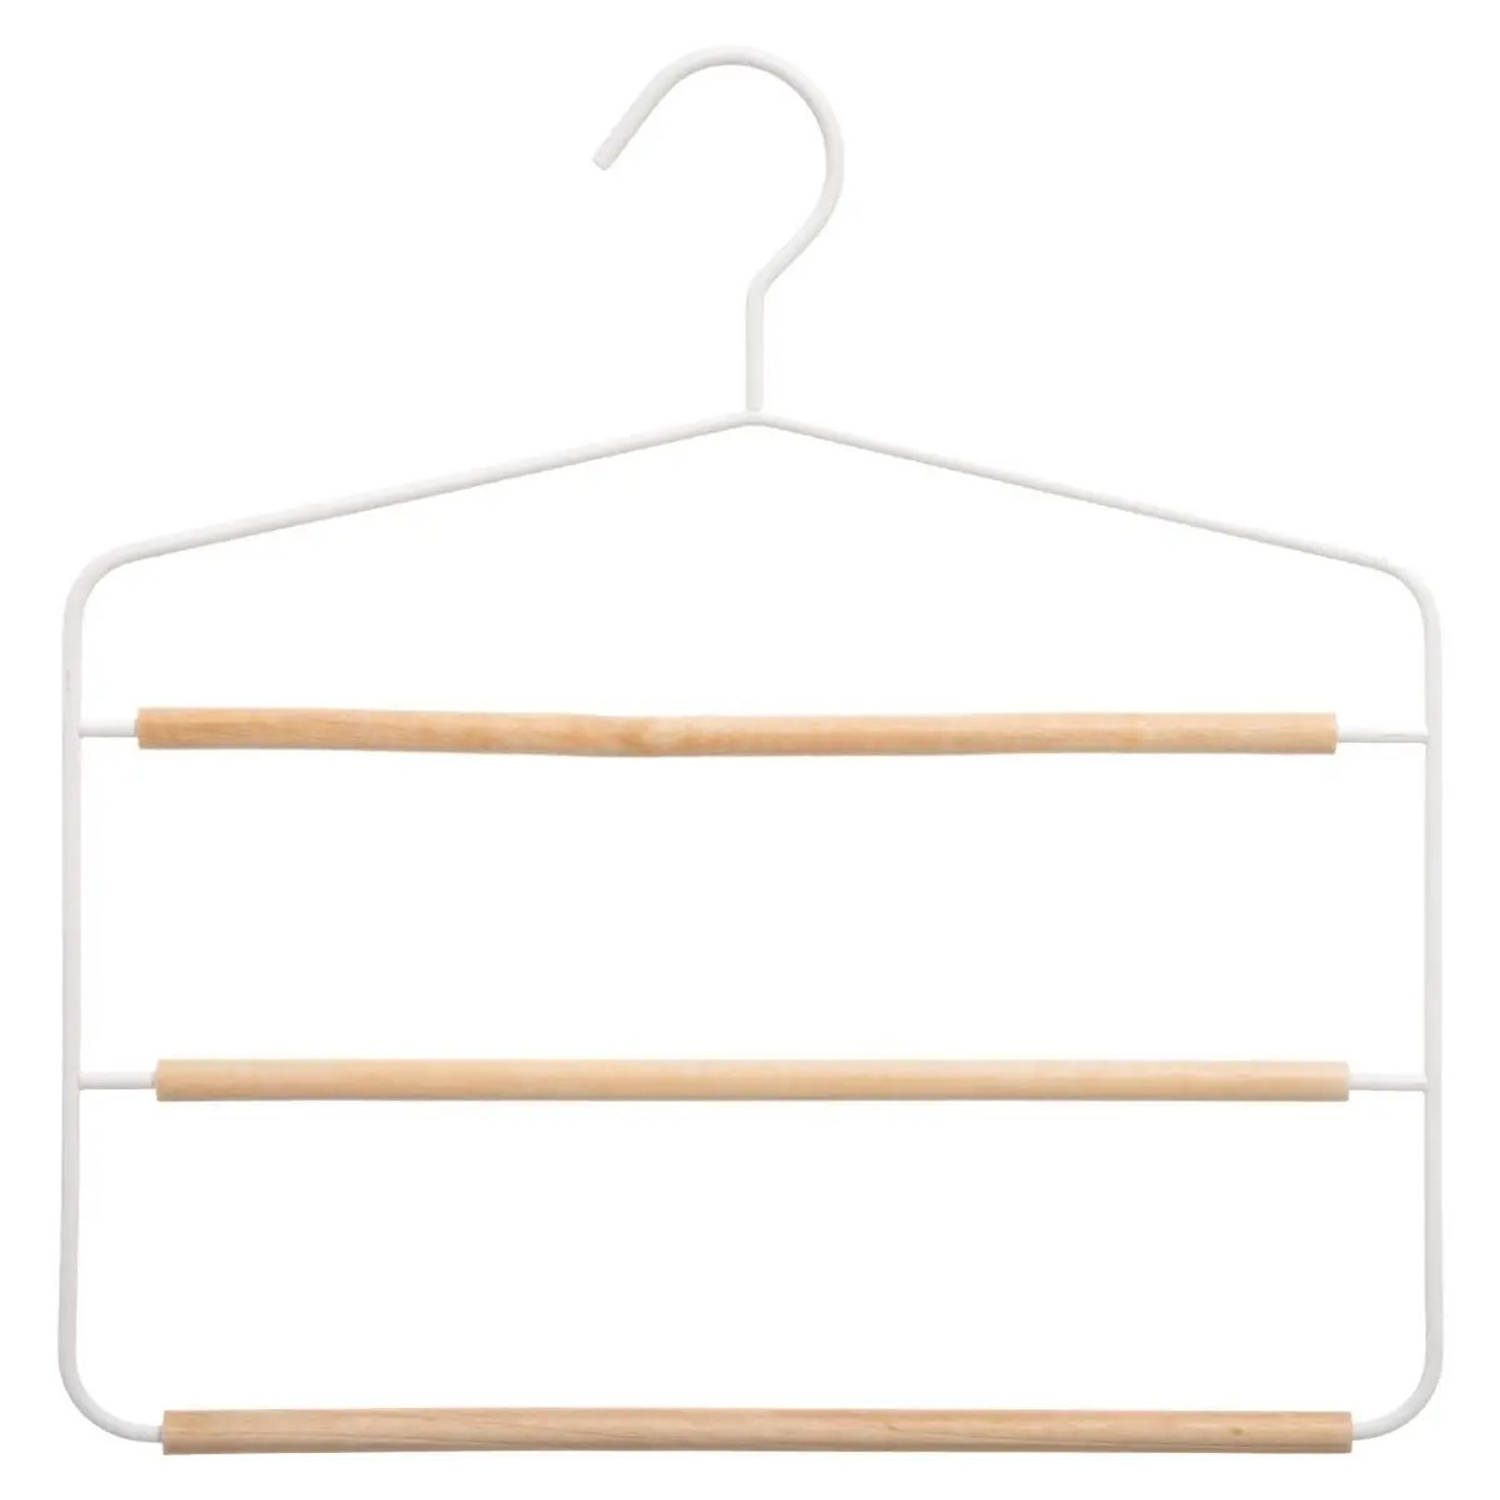 Inzichtelijk En kalmeren Luxe kledinghanger/broekhanger voor 3 broeken wit 35 x 36 cm -  Kledinghangers | Blokker